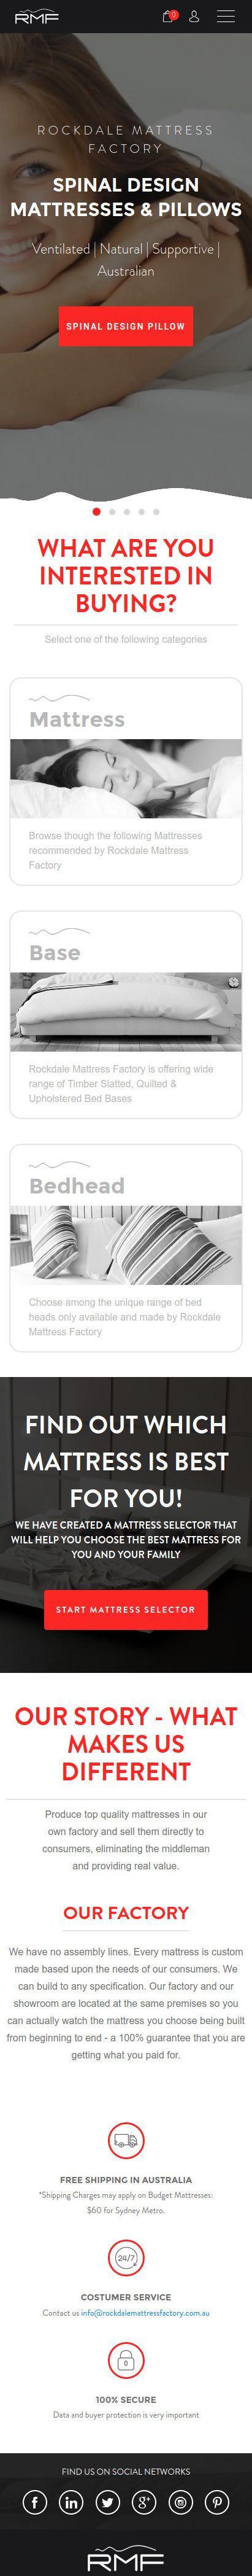 website-for-online-mattress-store